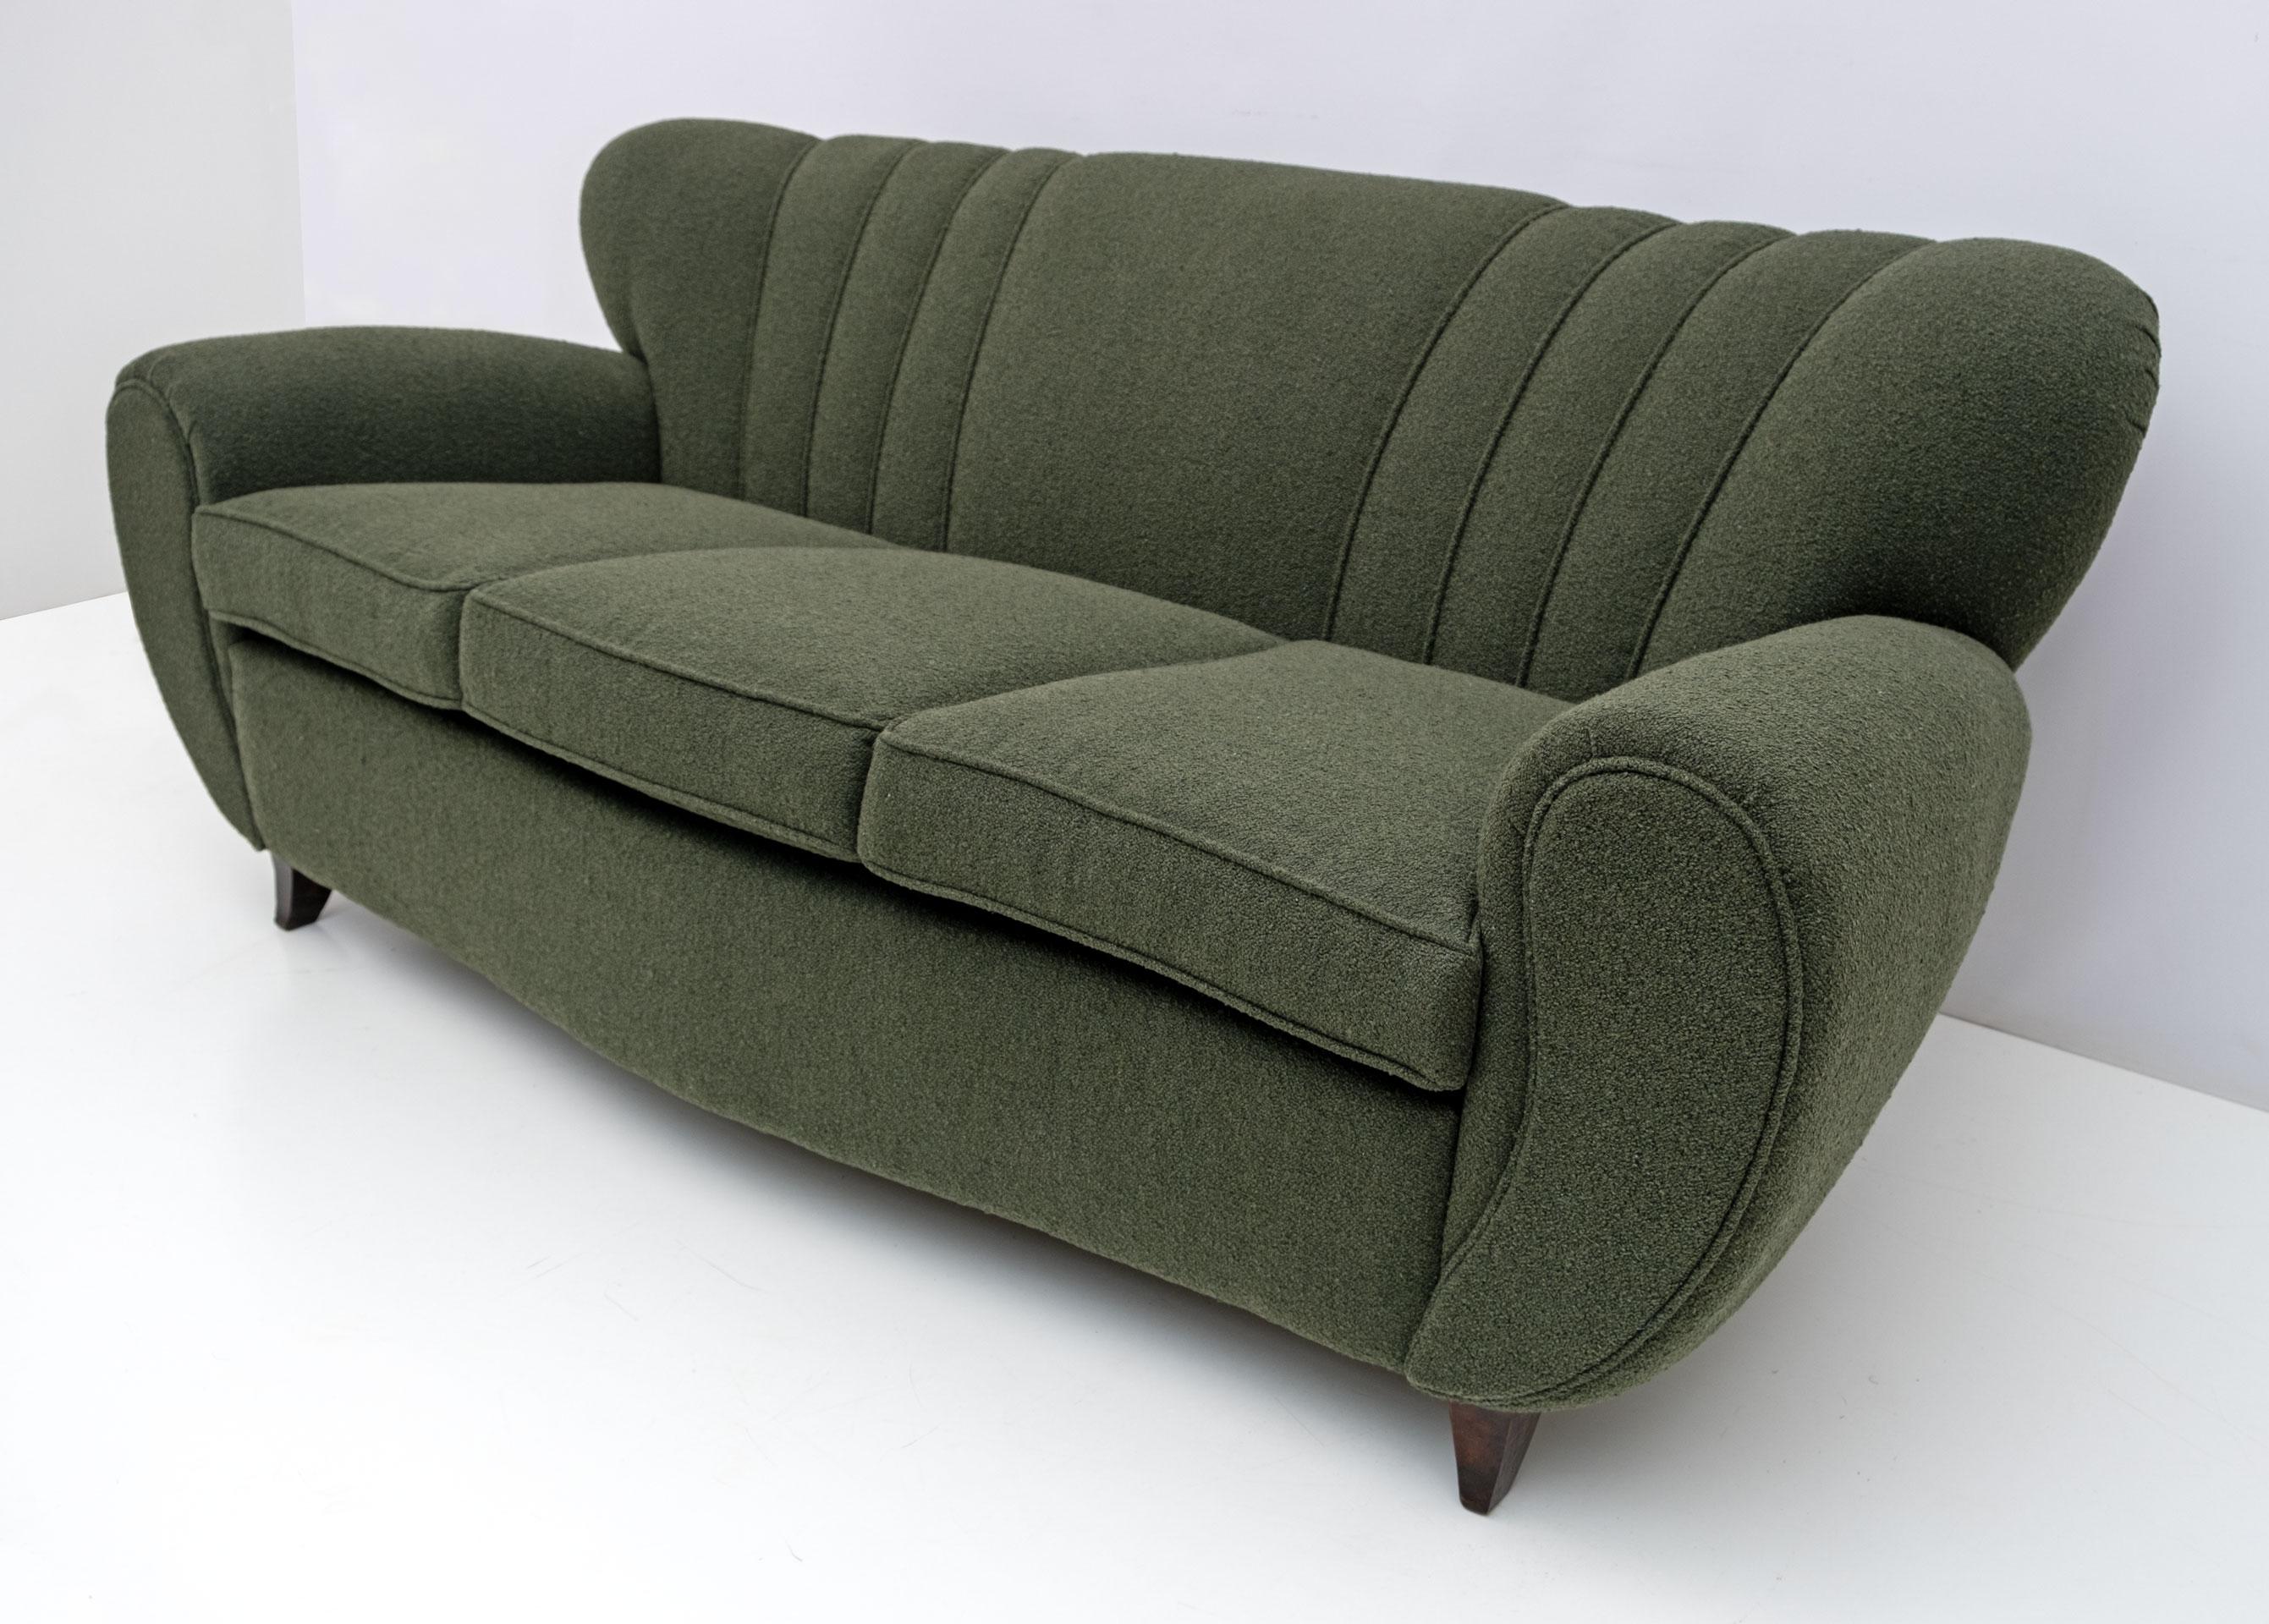 Grand canapé sculptural italien attribué à Guglielmo Ulrich, très confortable. Récemment tapissé en Bouclè vert, fini avec une bordure du tissu lui-même, afin d'accentuer ses formes courbes. Les pieds fuselés et incurvés en hêtre teinté noyer ont